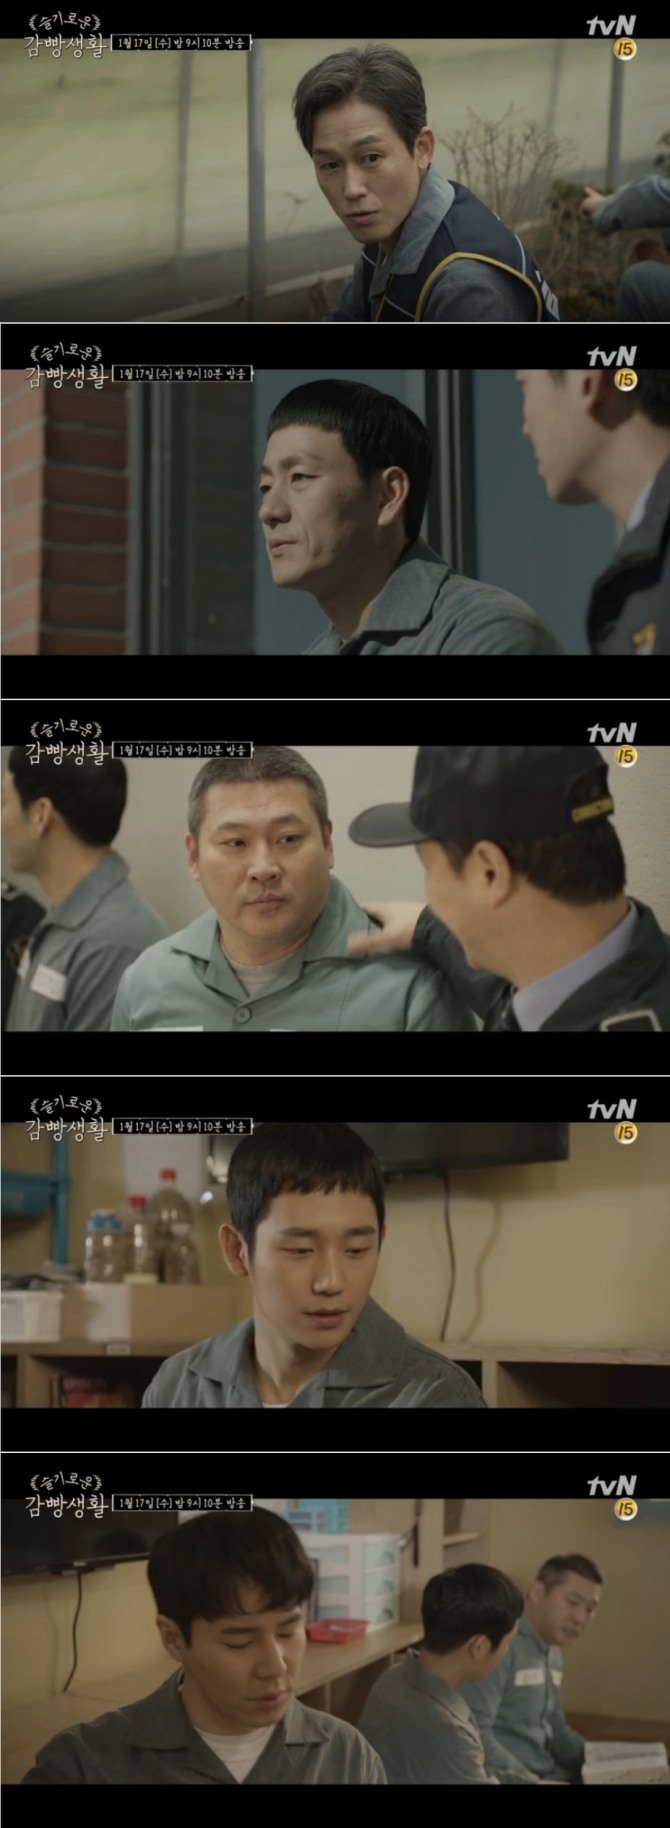 17일 오후 방송되는 tvN 수목드라마 '슬기로운 감빵생활' 15회에서는 염반장(주석태)이 원예반에 출현해 김제혁(박해수)과 팽팽한 대립각을 세우는 가운데 장기수 김민철(최무성)의 가석방 기대감이 높아지는 장면이 그려진다. 사진=tvN 영상 캡처